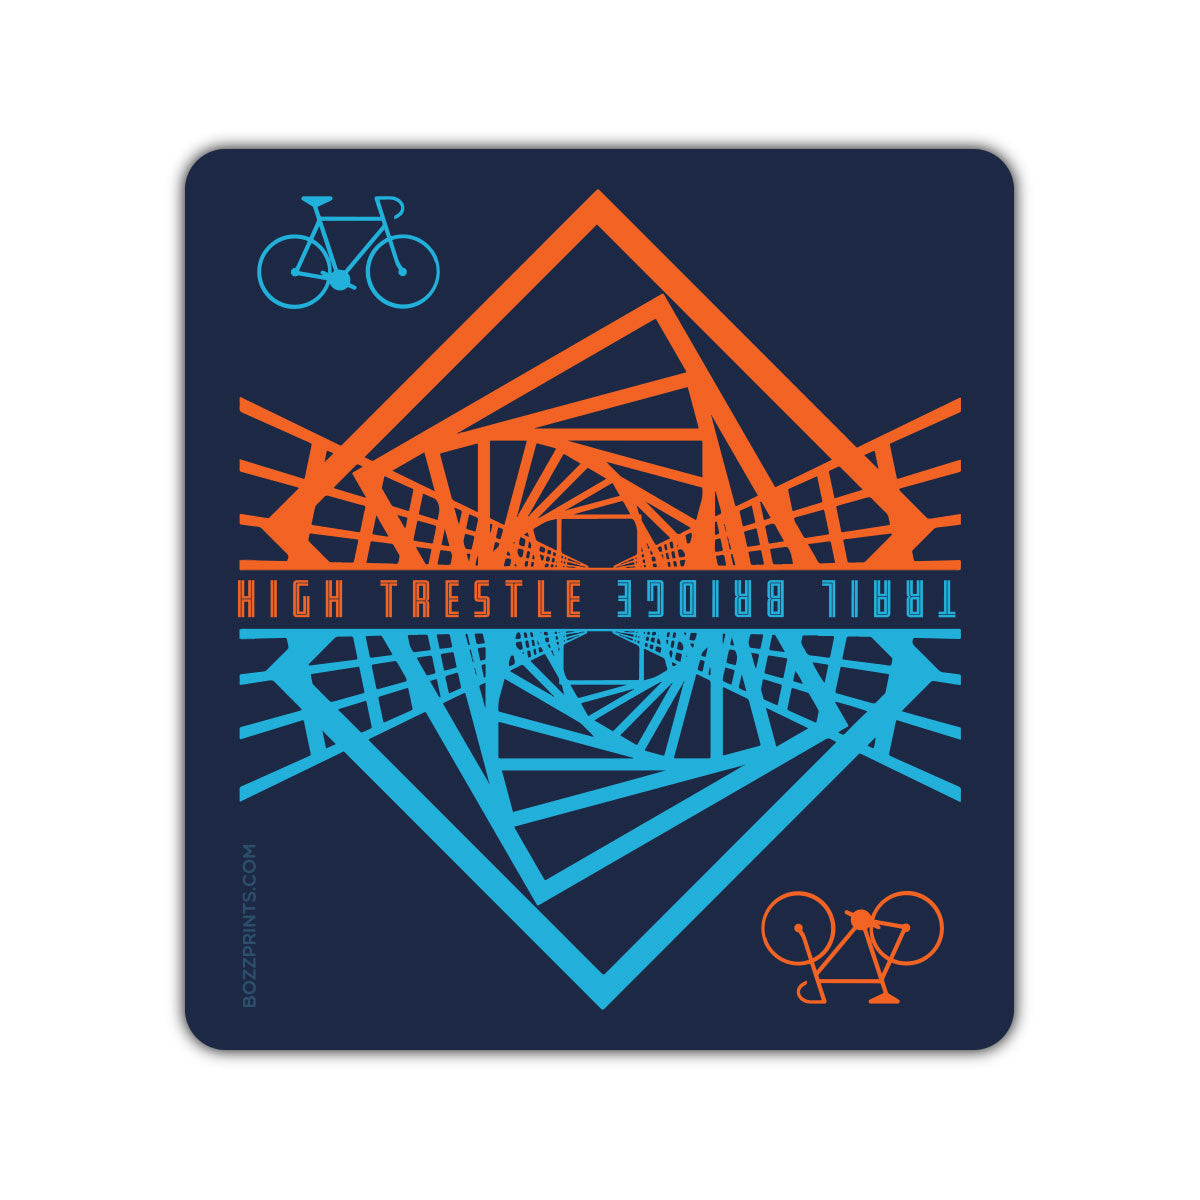 High Trestle Trail Bridge - Bozz Prints